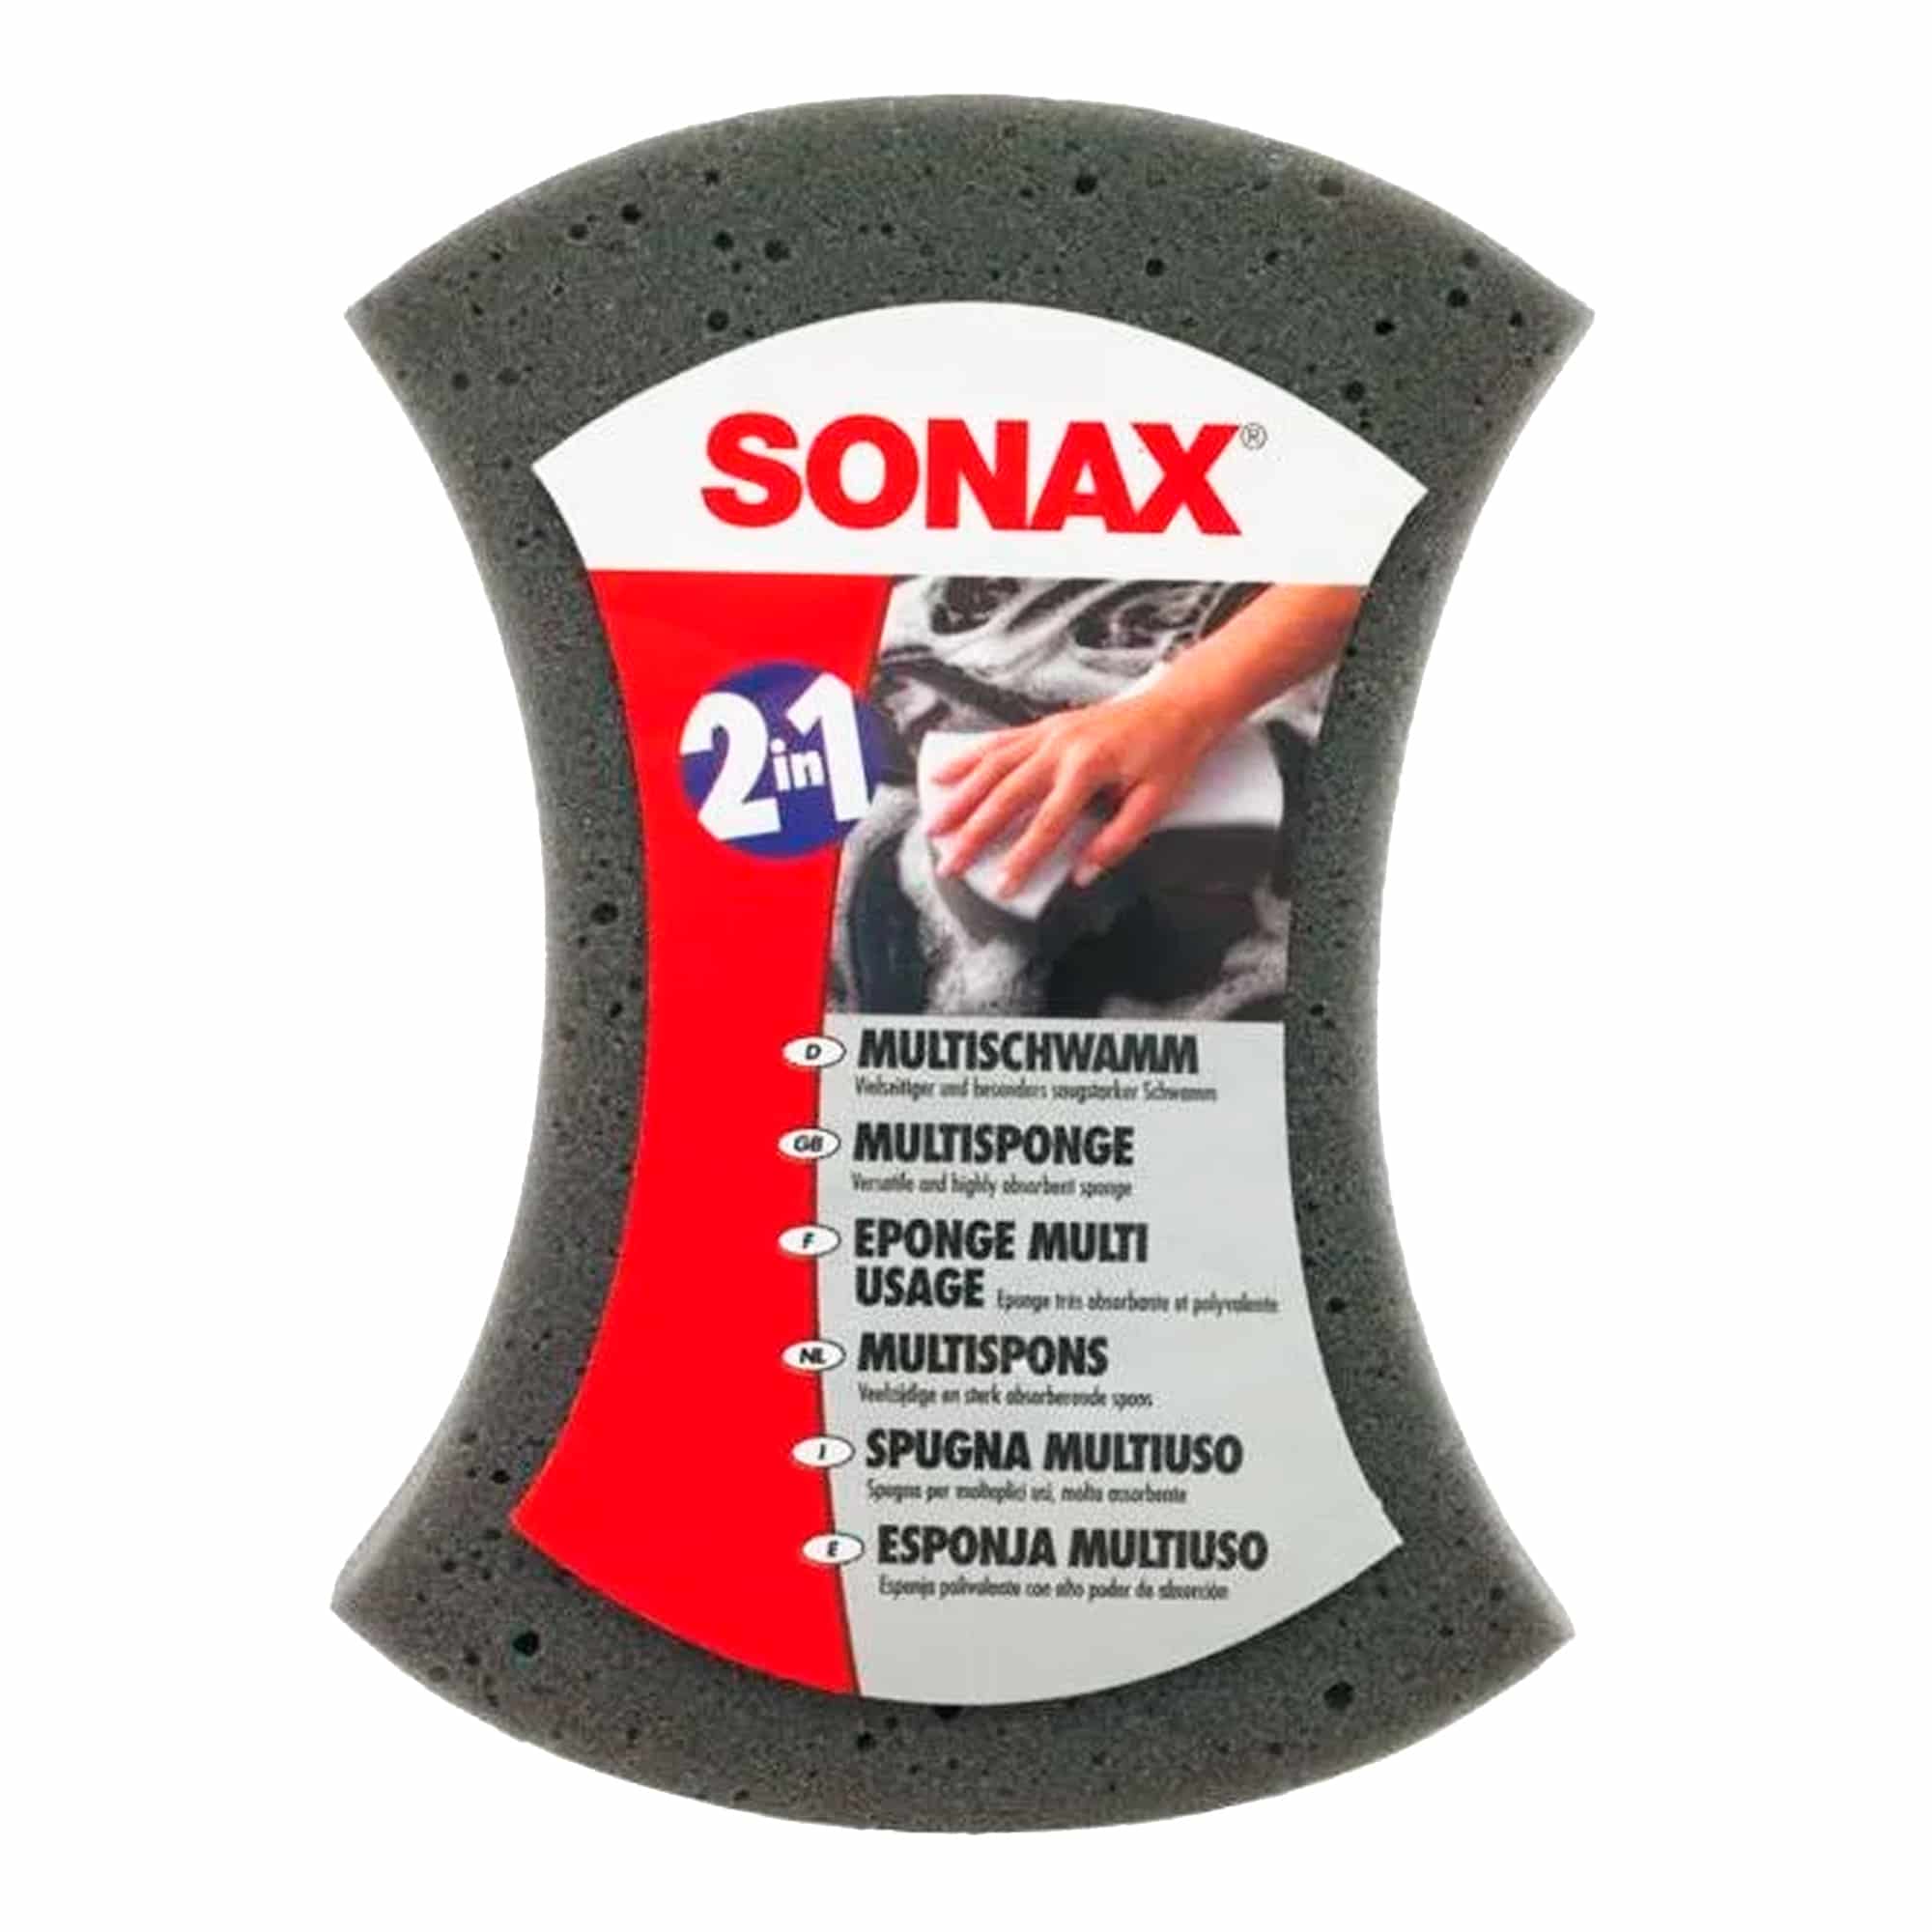 Губка для мойки авто Sonax двухсторонняя (428000) (10963)